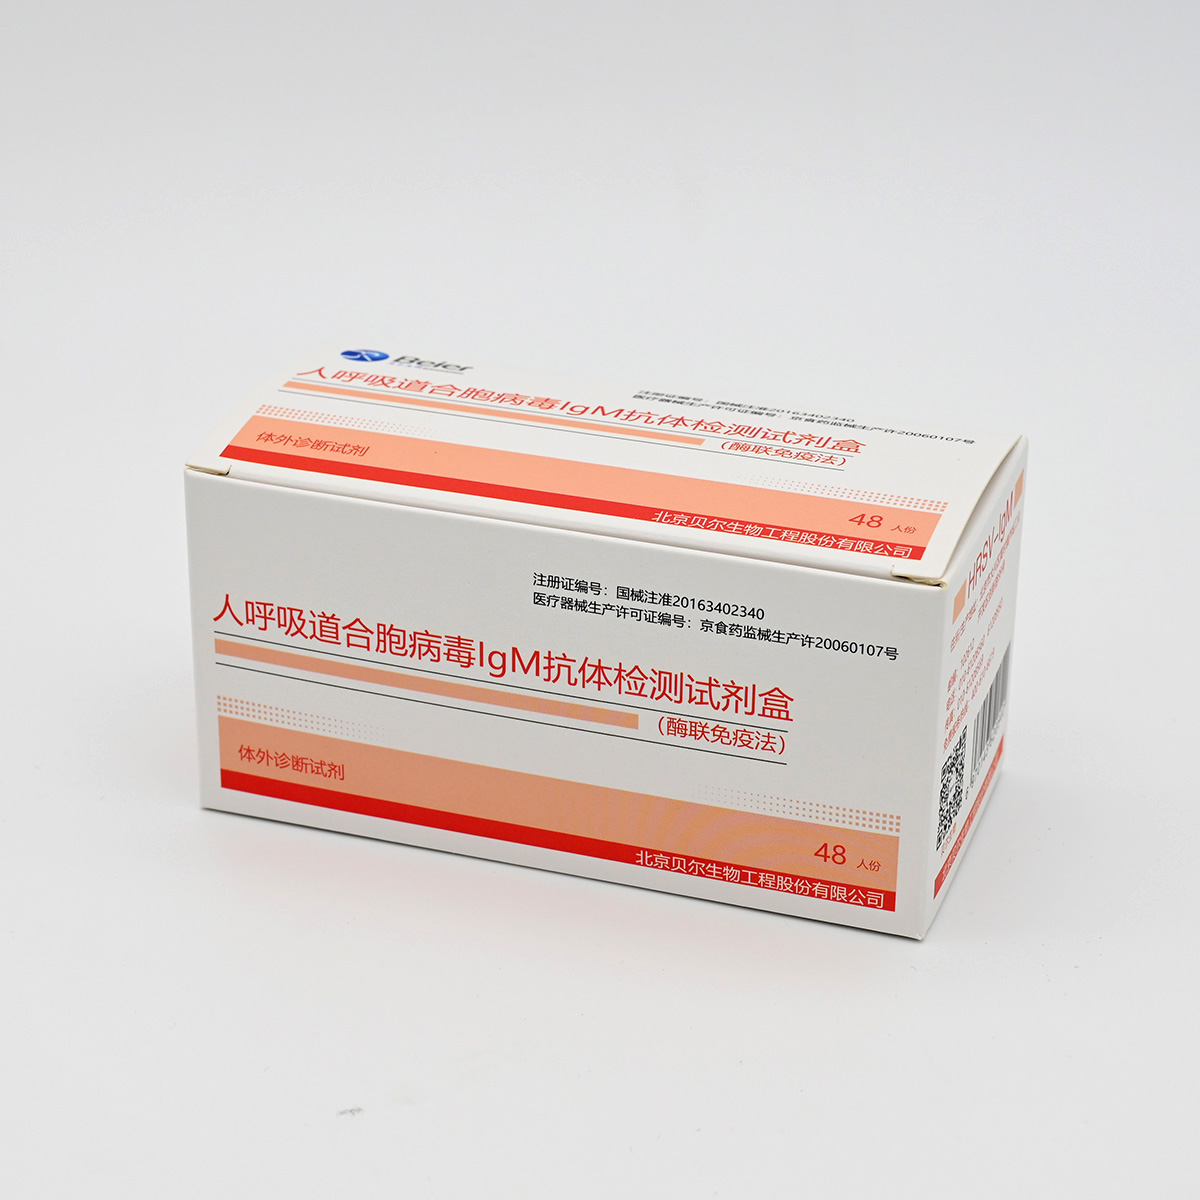 【贝尔】人呼吸道合胞病毒抗体IgM检测试剂盒(酶联免疫法)